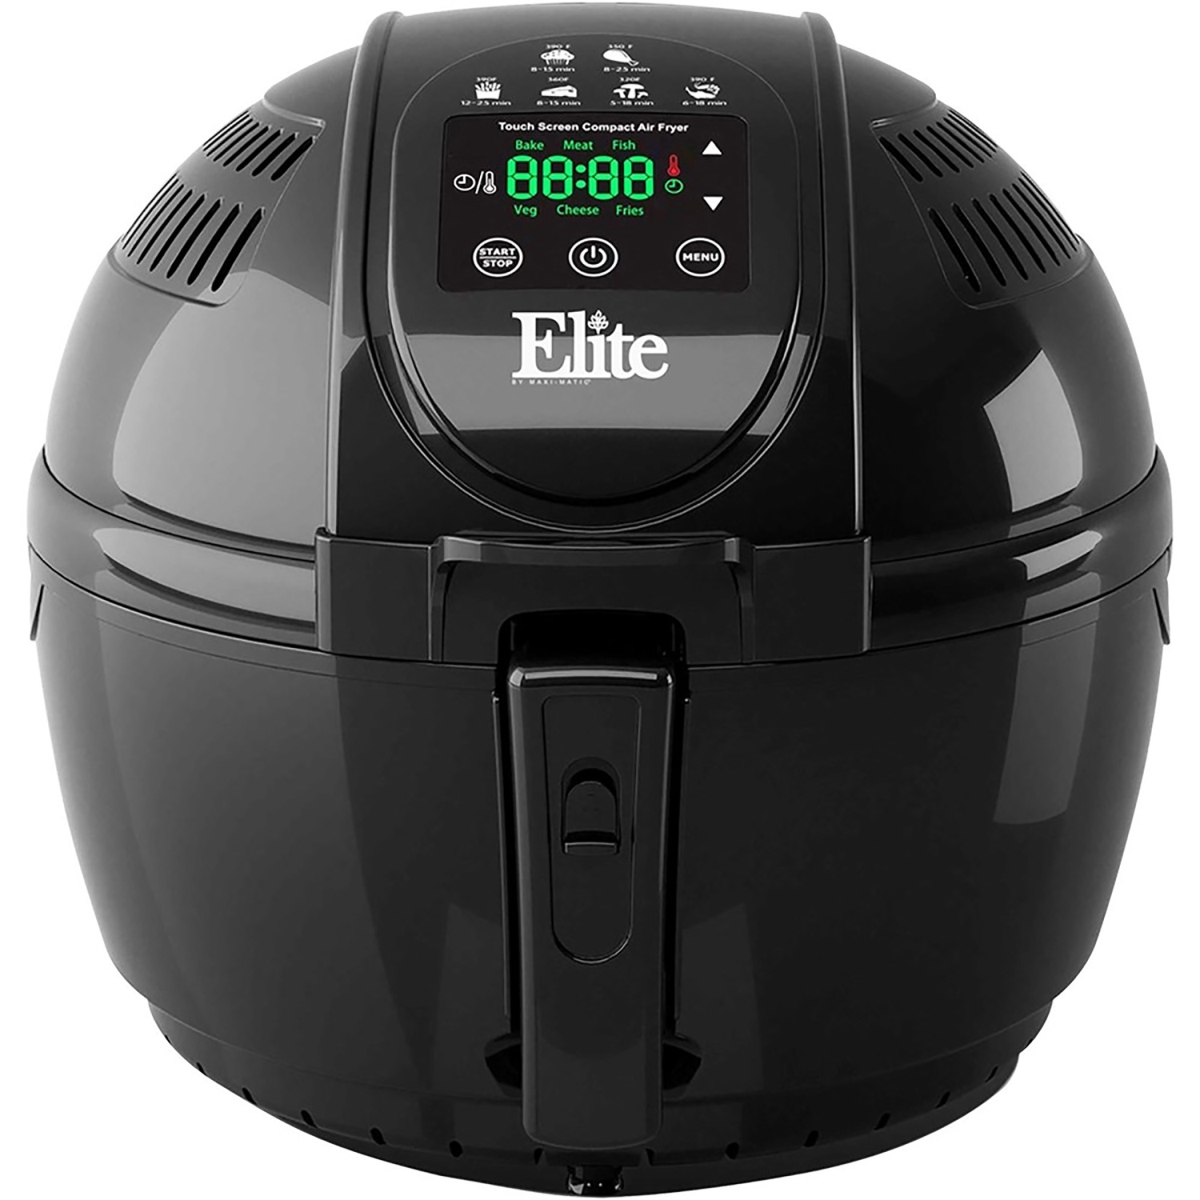 Eaf2500d 3.5 Qt. Maximatic Digital Air Fryer, Black